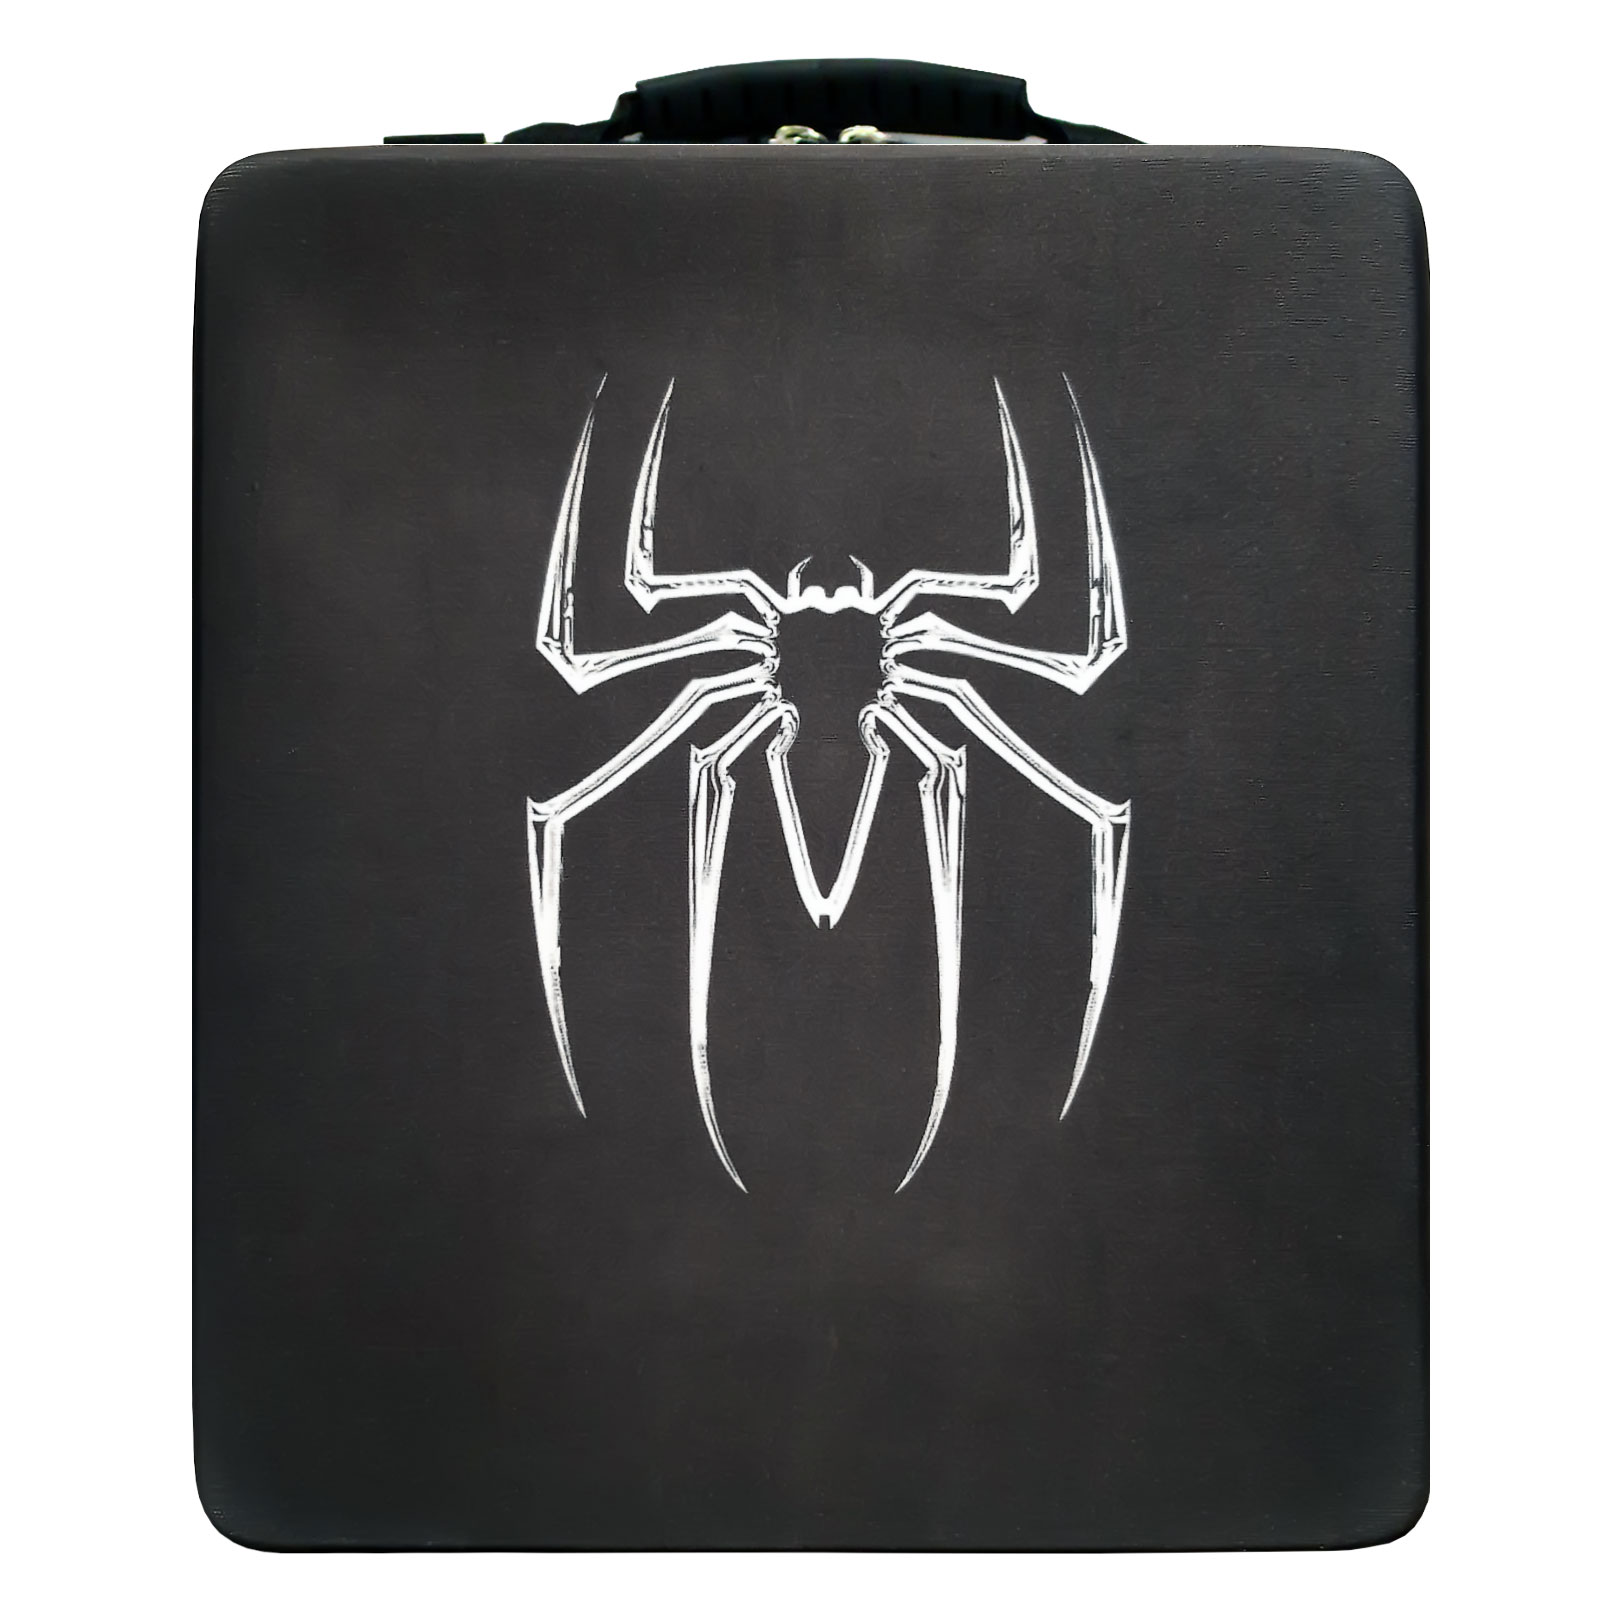 نقد و بررسی کیف حمل کنسول پلی استیشن 4 مدل Spider Black توسط خریداران